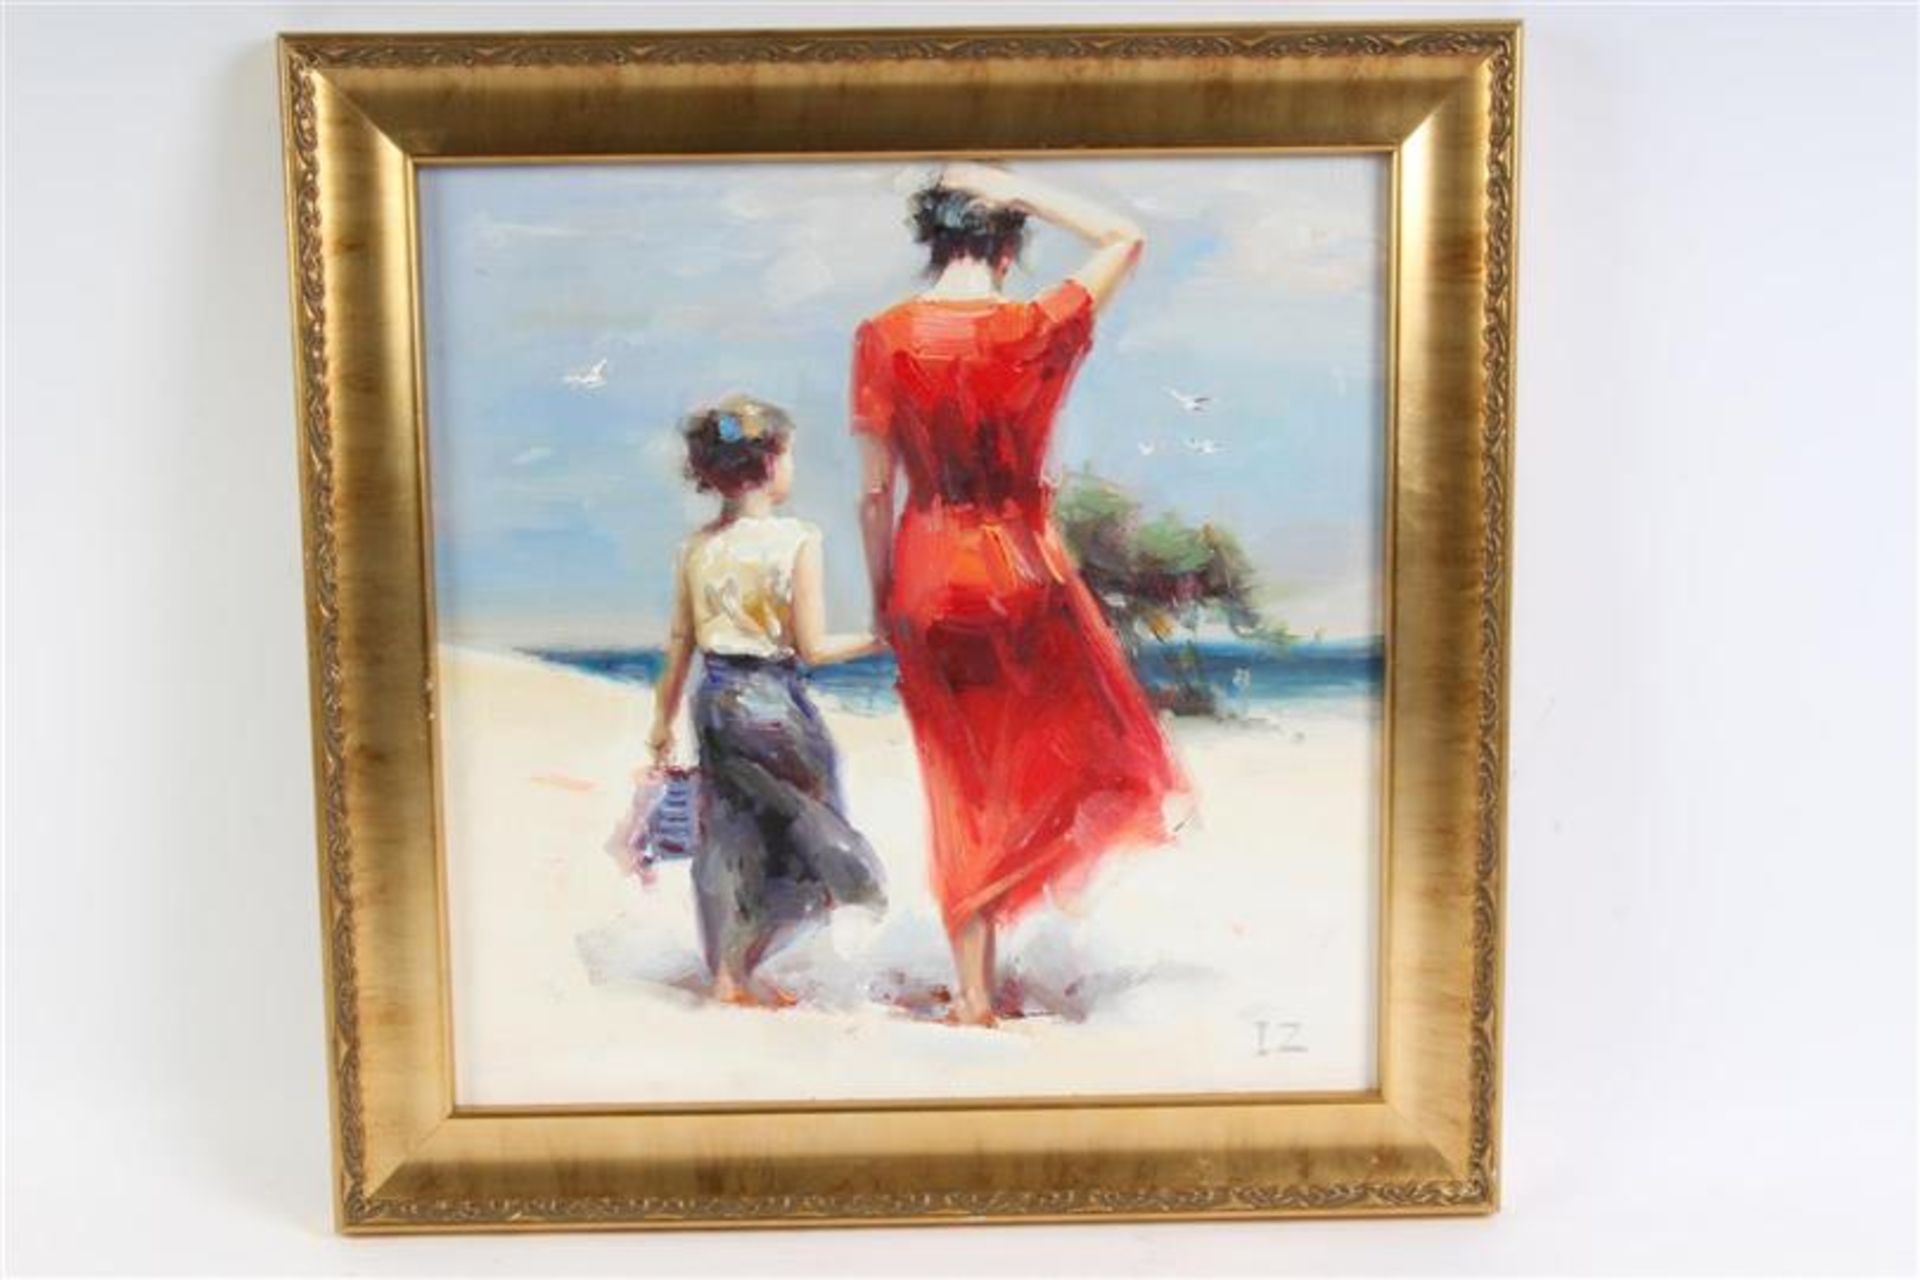 Schilderij op doek, 'Summer Holidays', gesigneerd IZ. HxB: 40 x 40 cm.